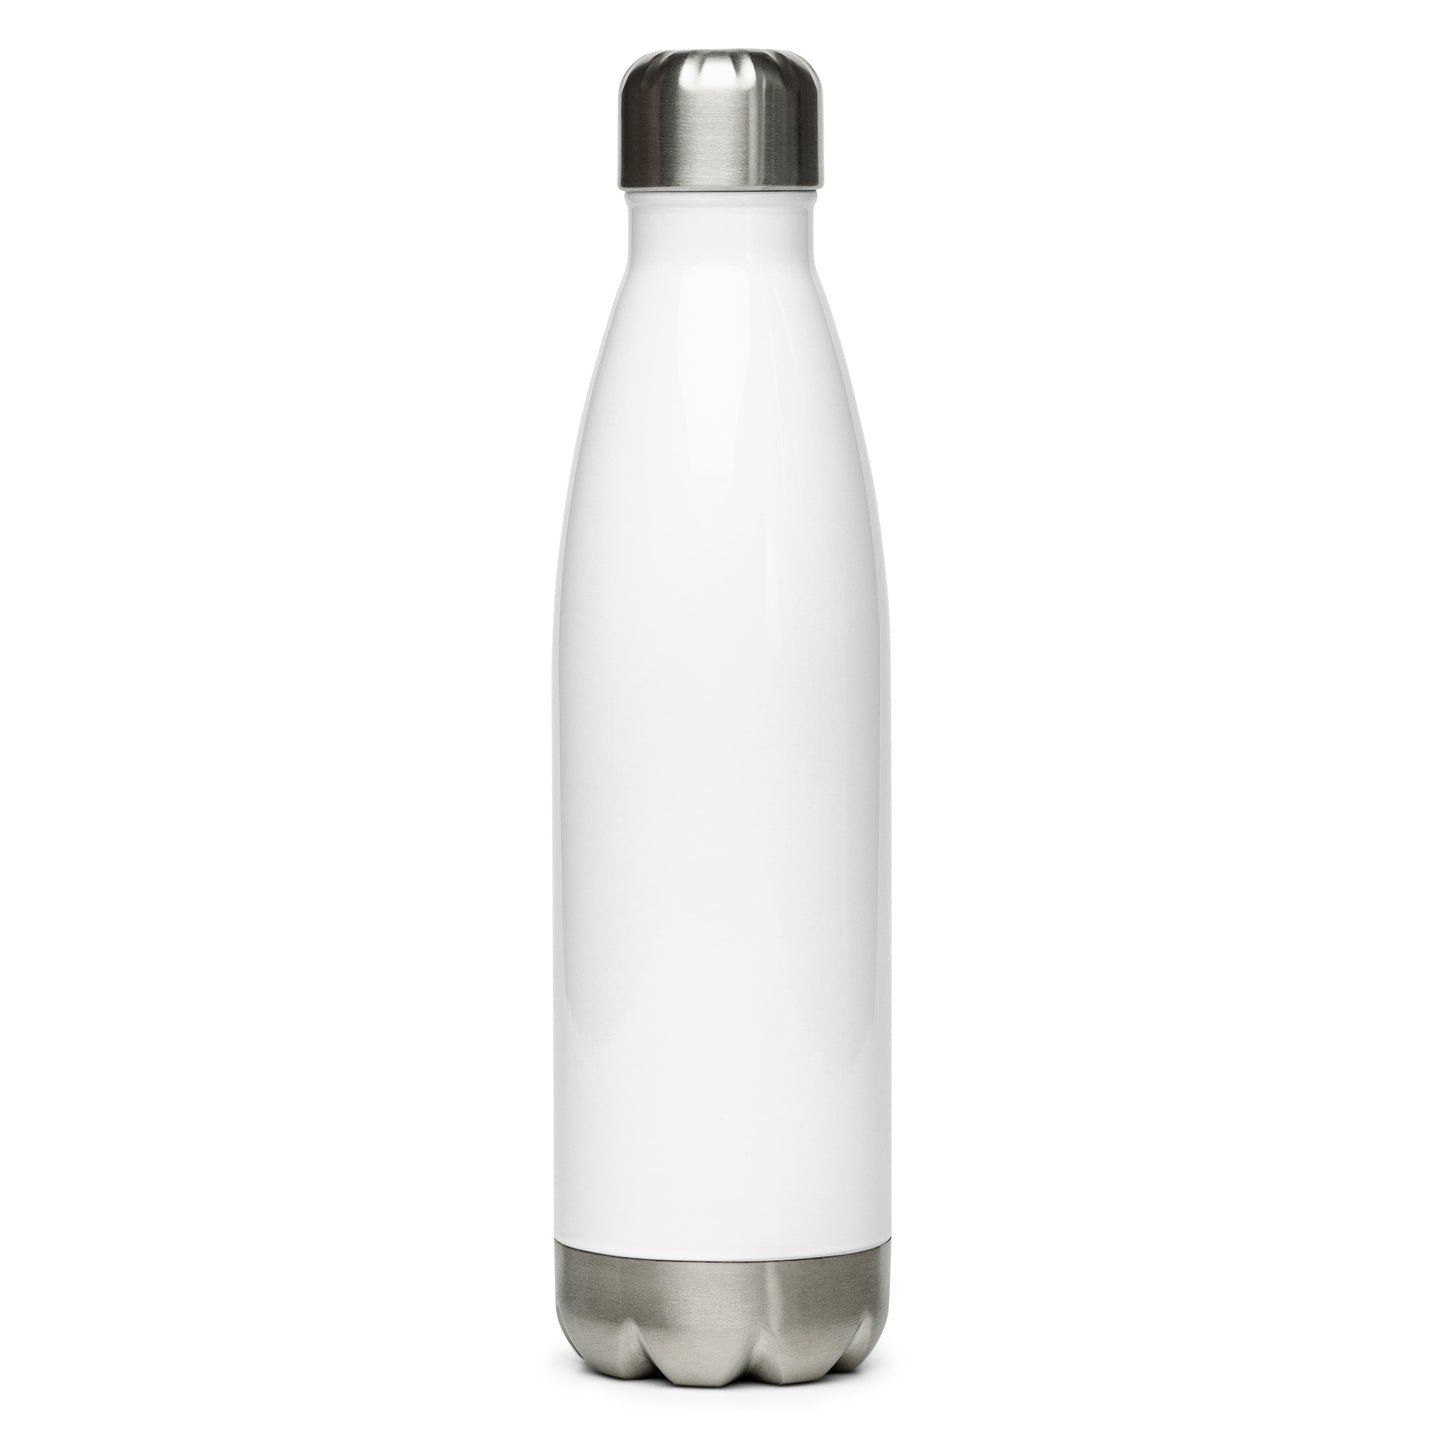 NJ Trash-Stainless Steel Water Bottle